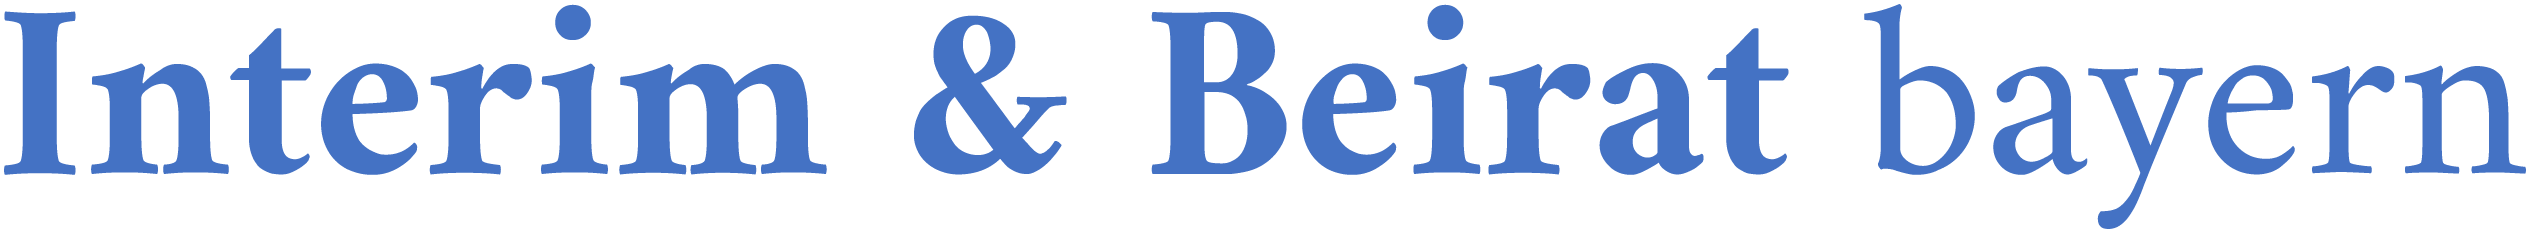 Beirat Bayern Logo